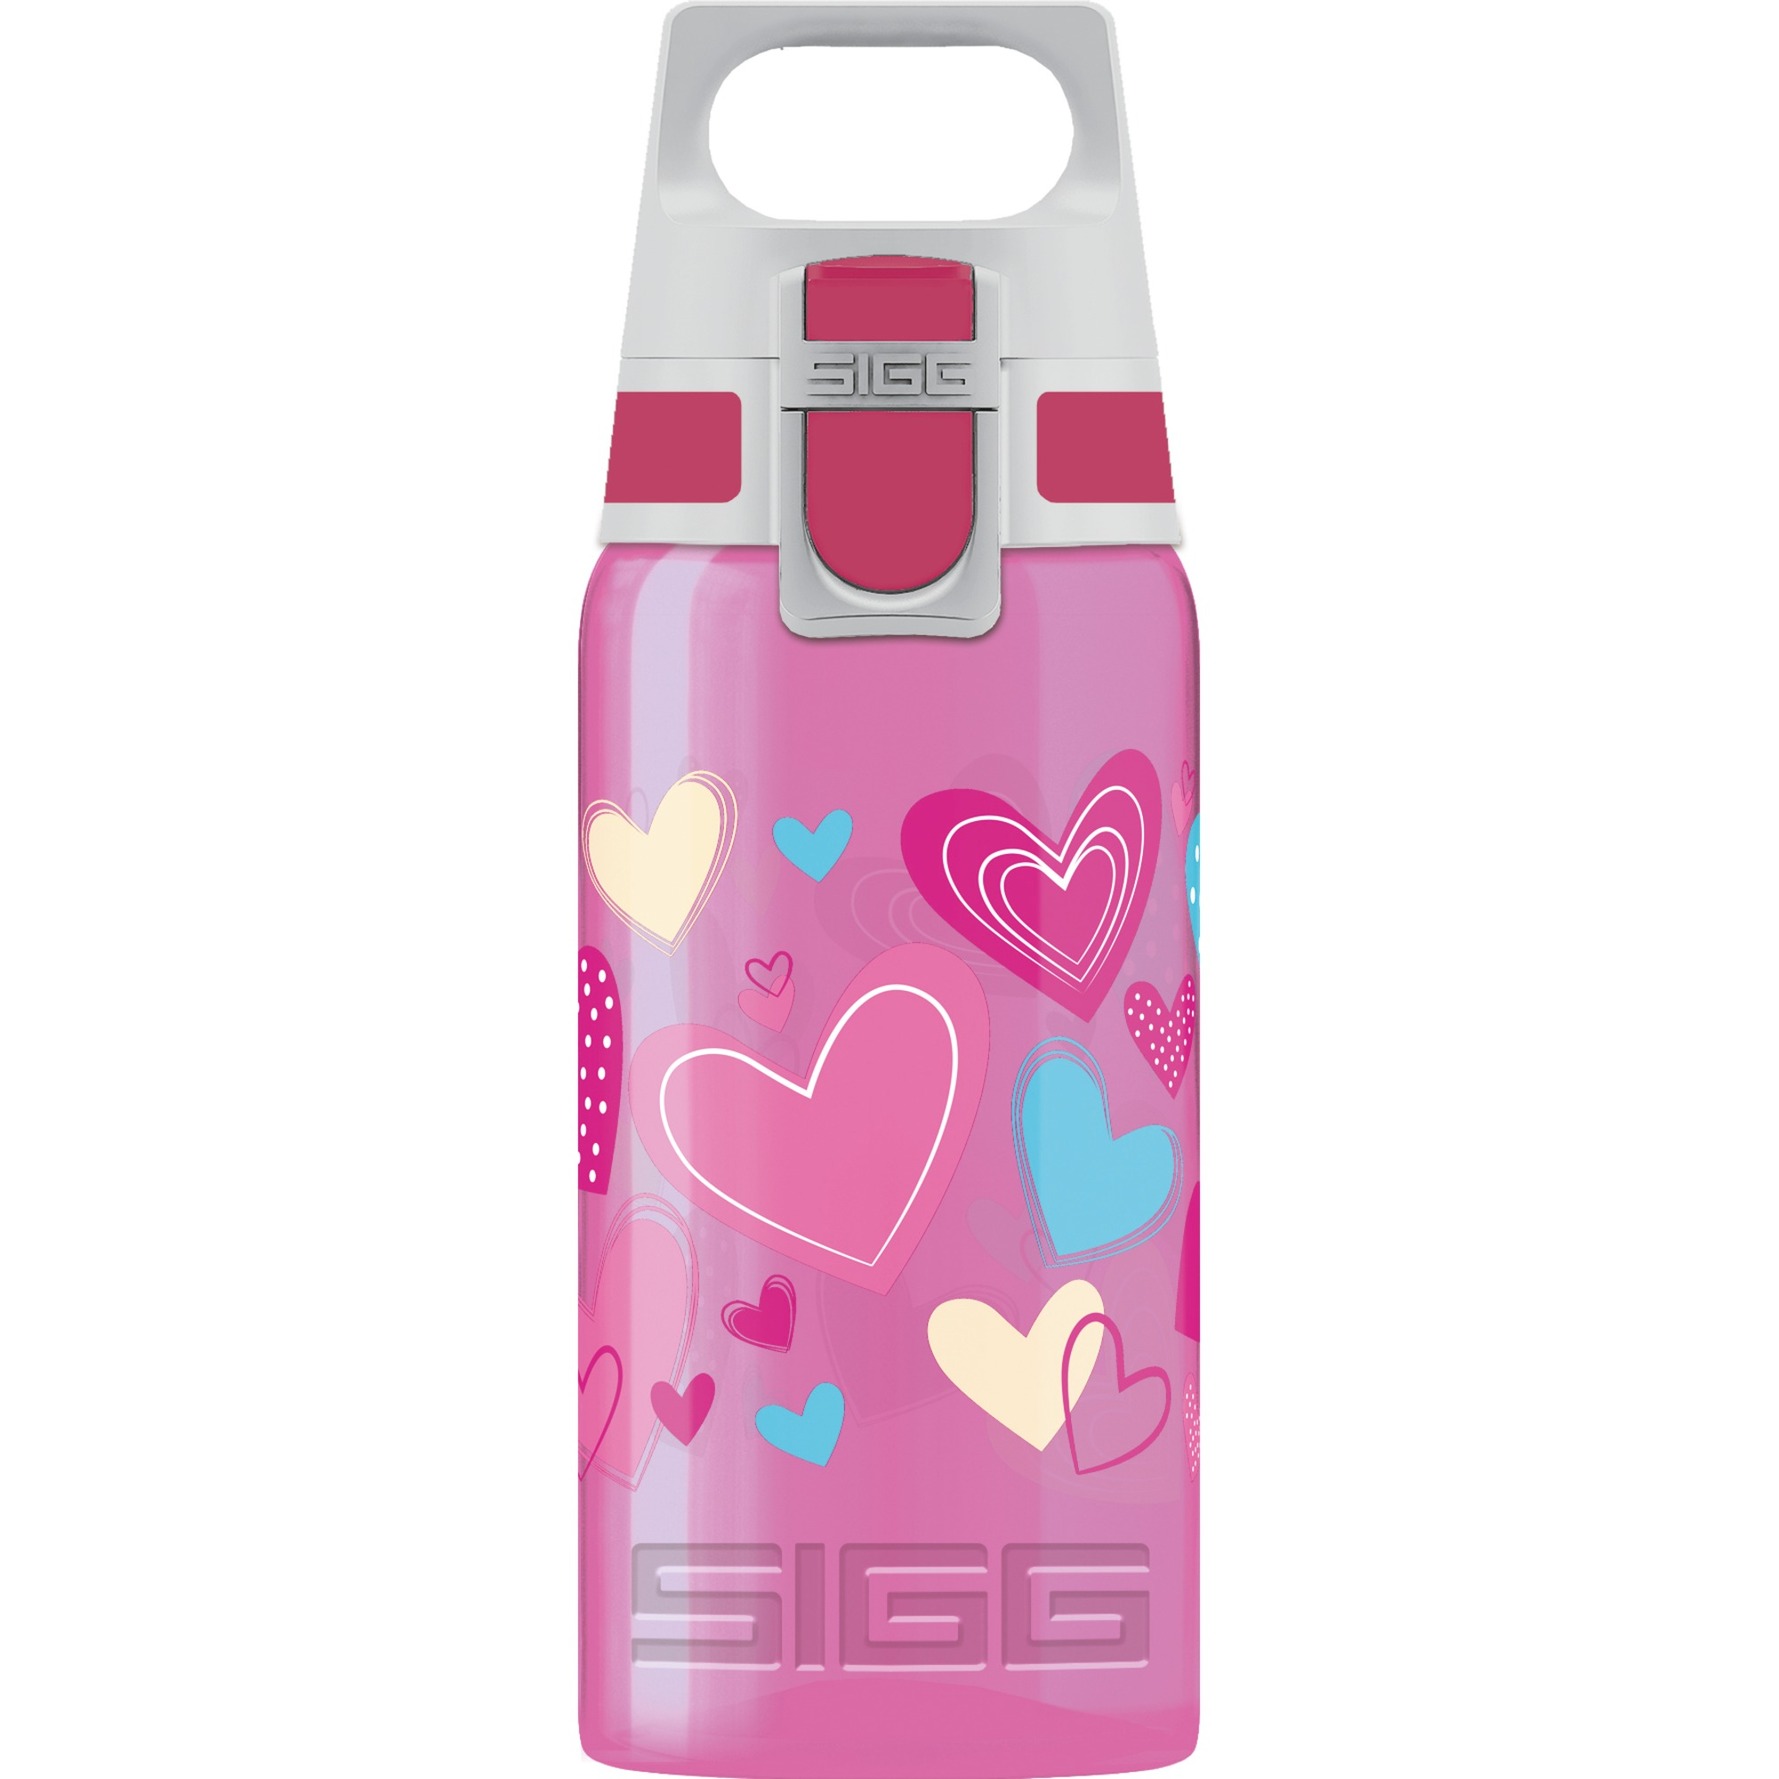 Image of Alternate - Trinkflasche VIVA ONE Hearts 0,5L online einkaufen bei Alternate